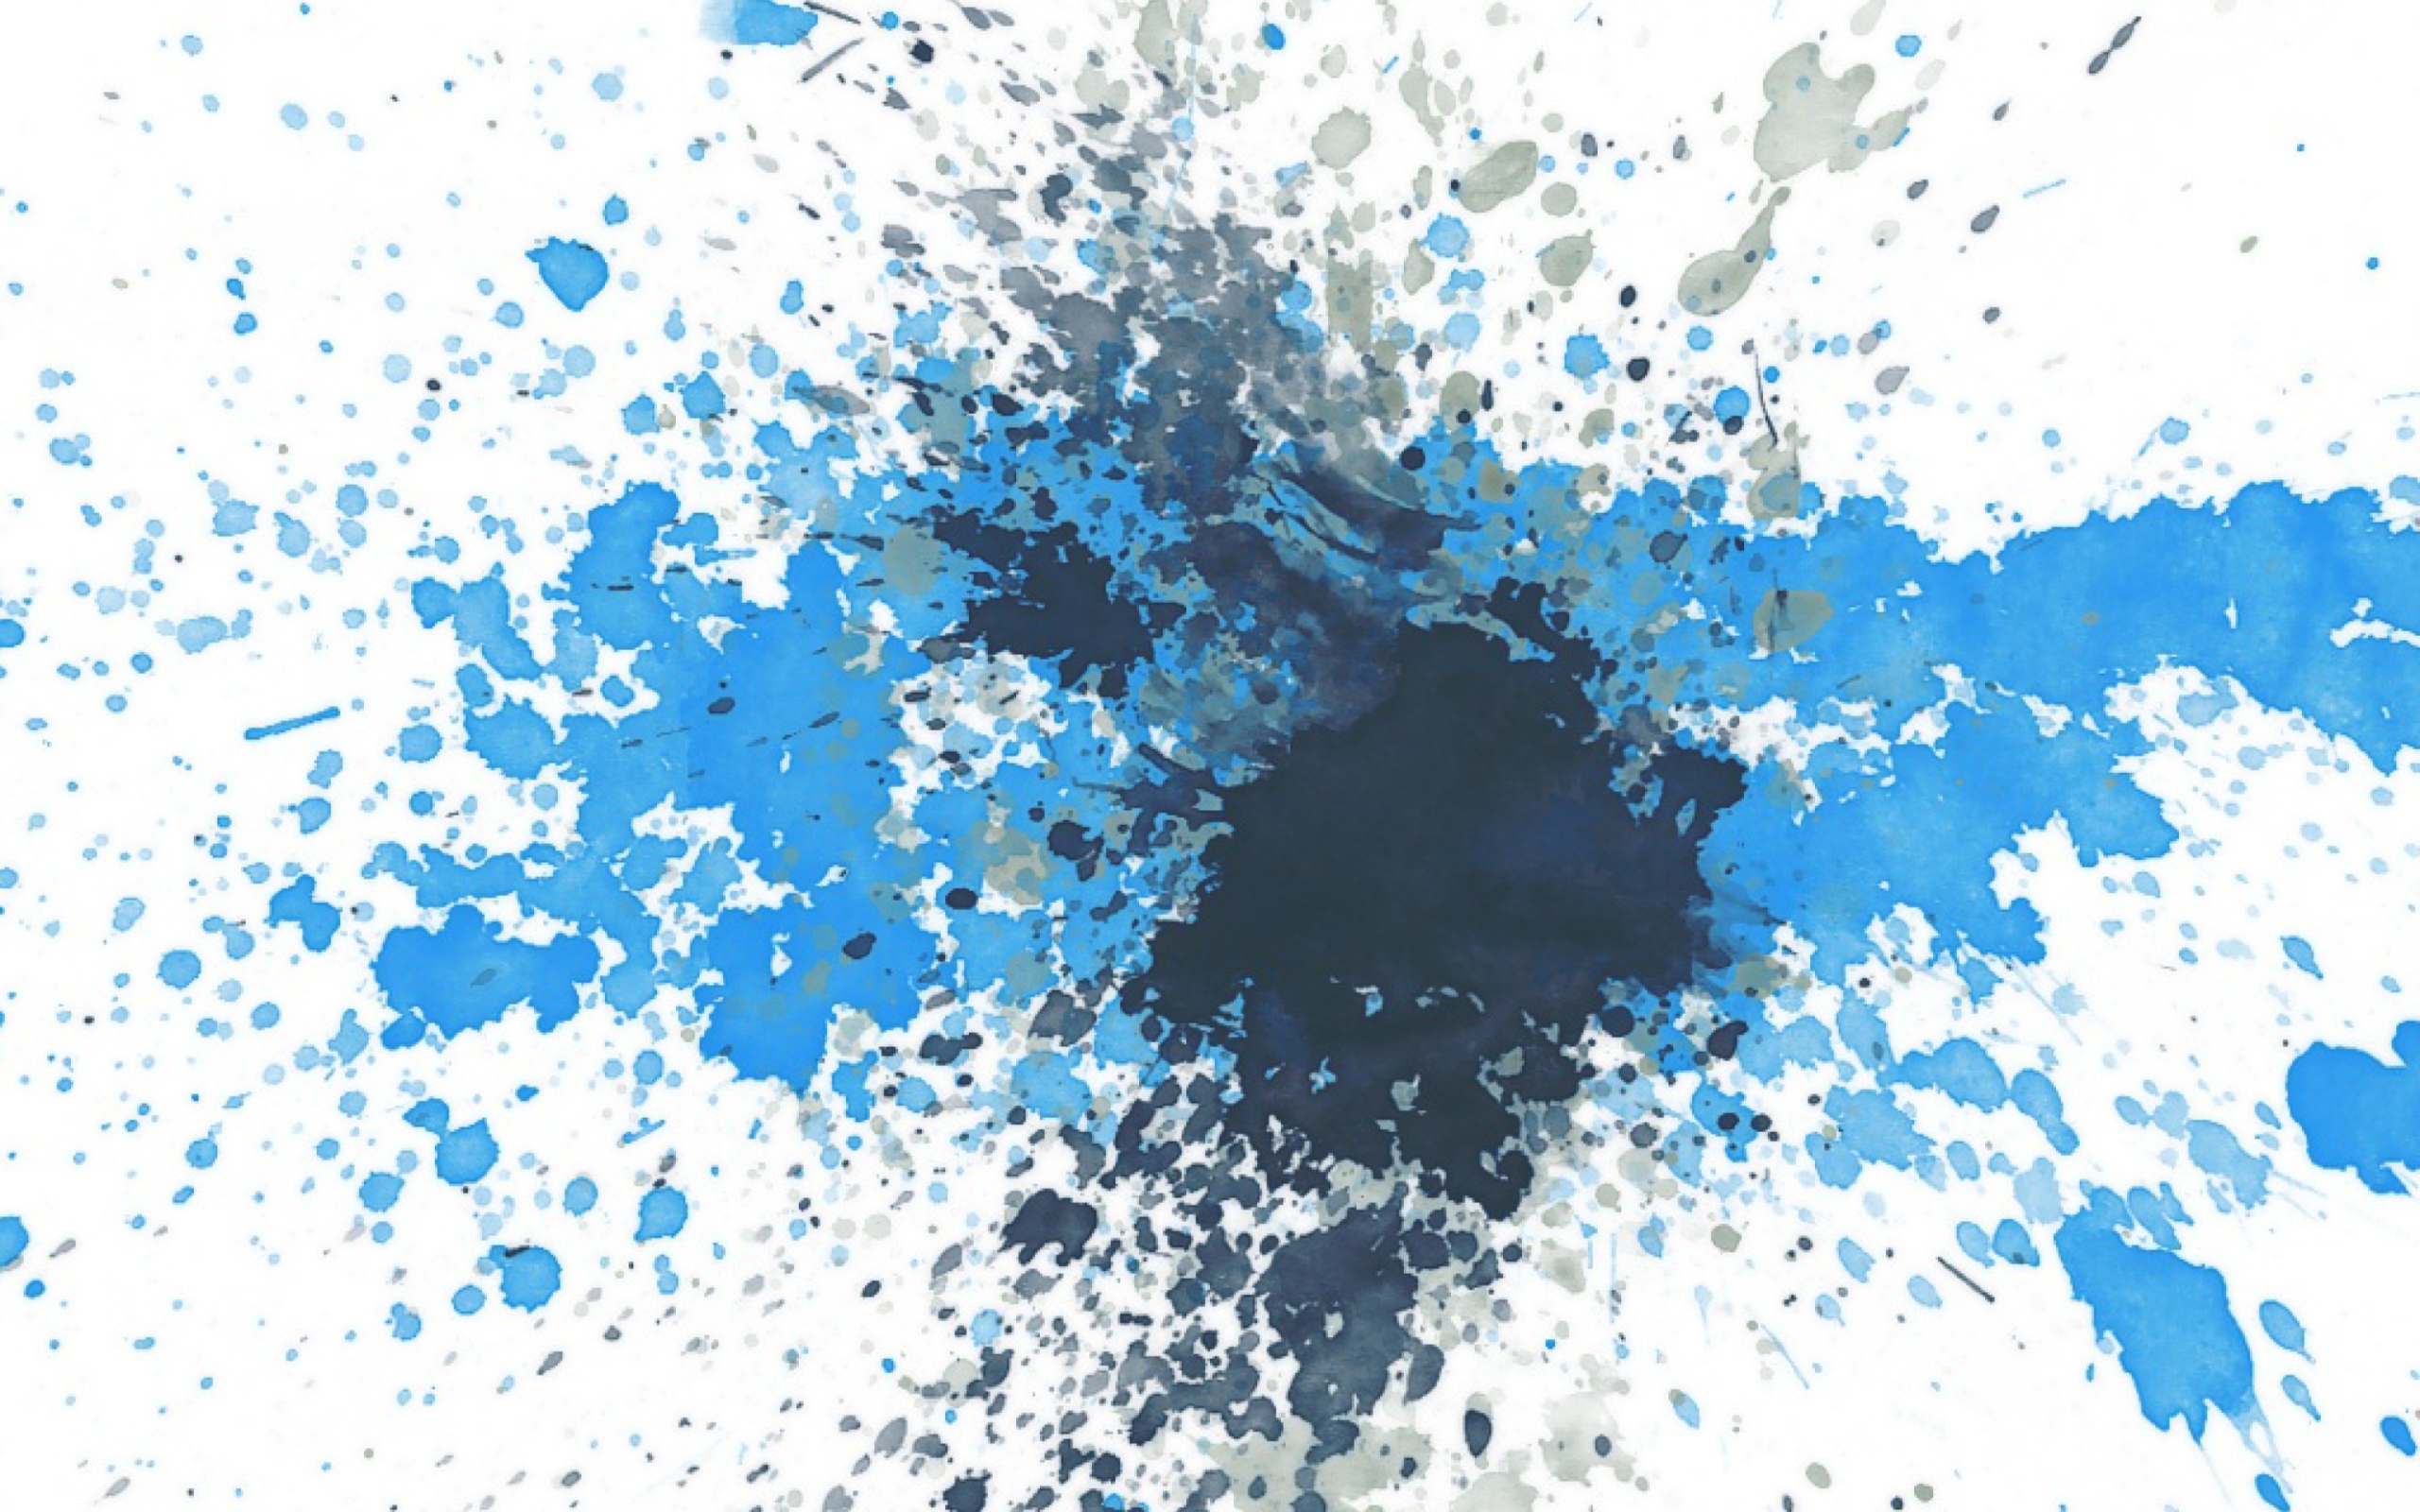 Sfondi Splashes Of Blue 2560x1600